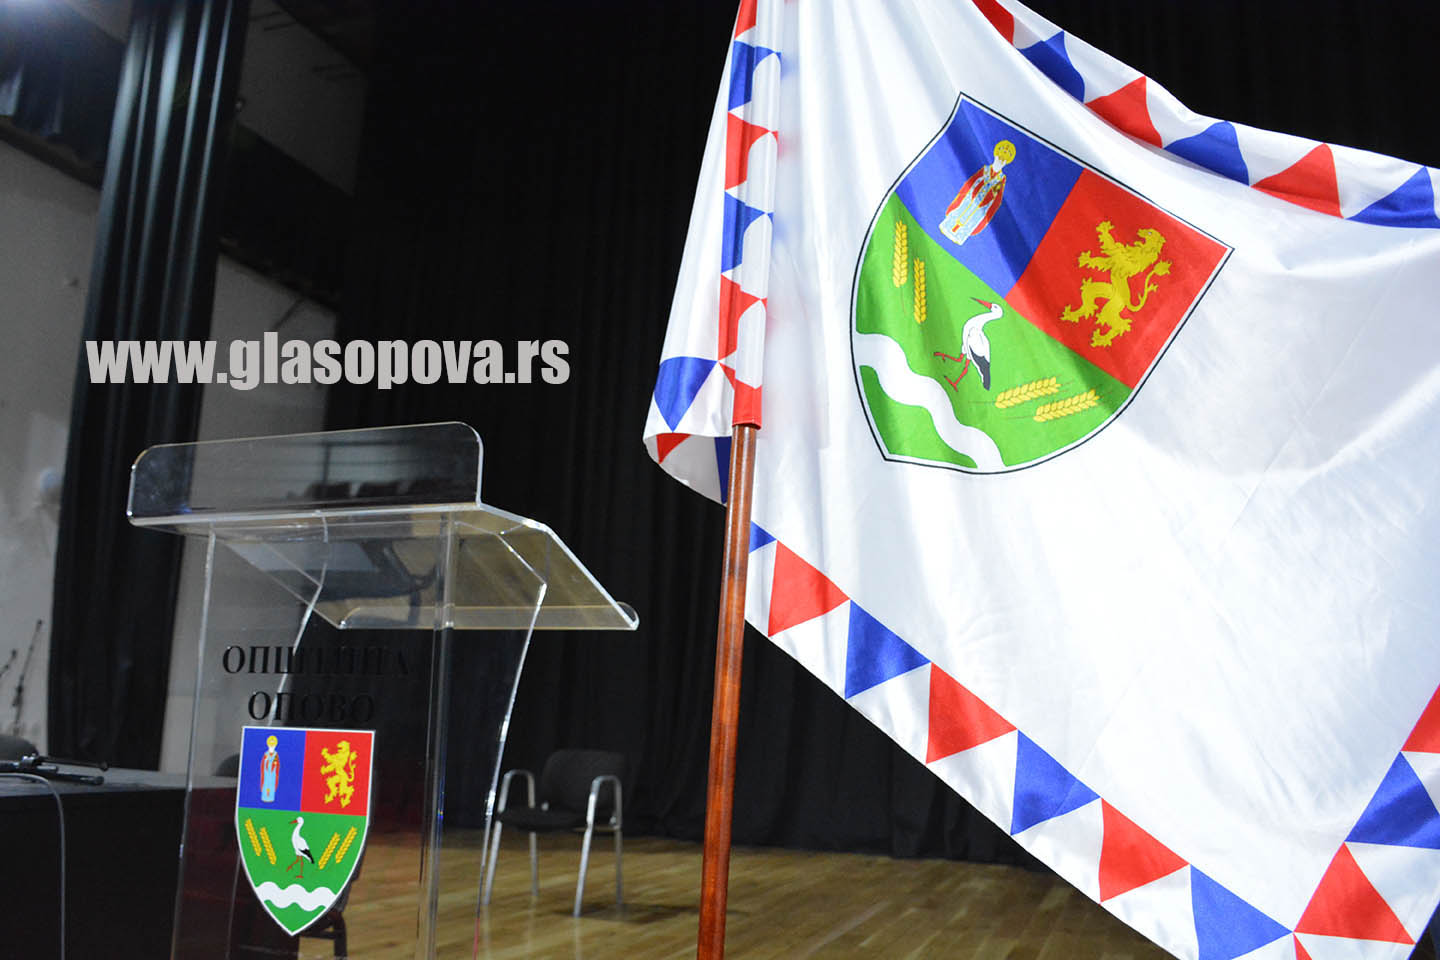 Skupština opštine Opovo: 25. sednica zakazana za 31. januar